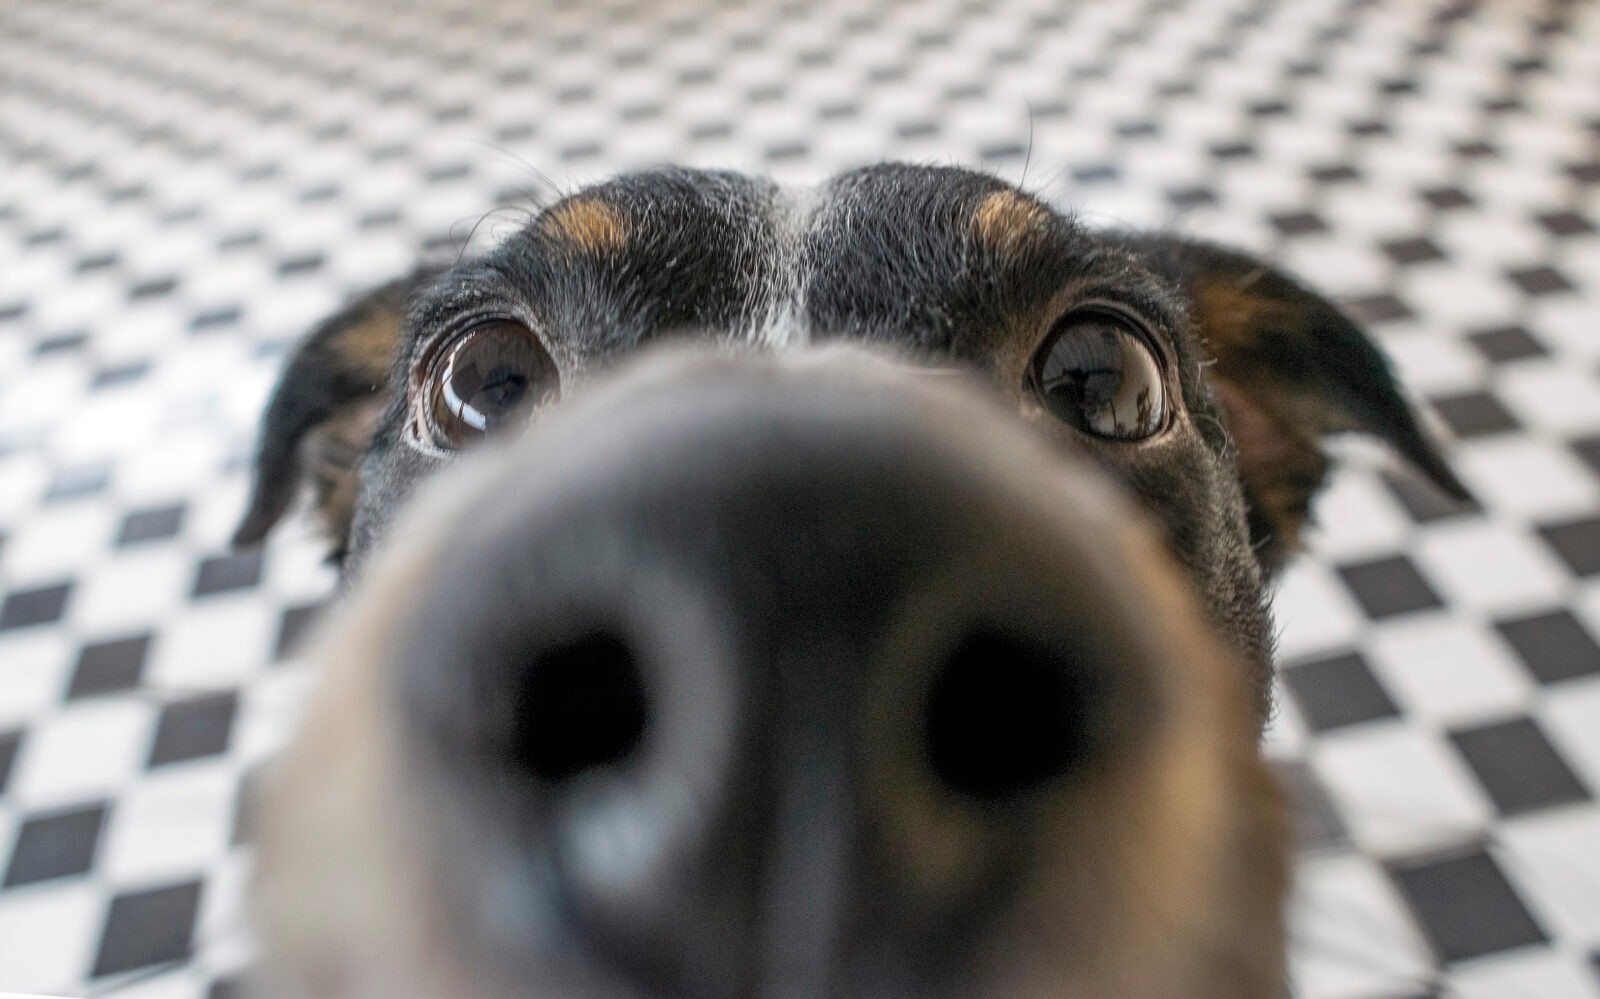 Nie wspominaj przy nim o weterynarzu… Naukowcy zbadali, jak psi mózg reaguje na ludzką mowę